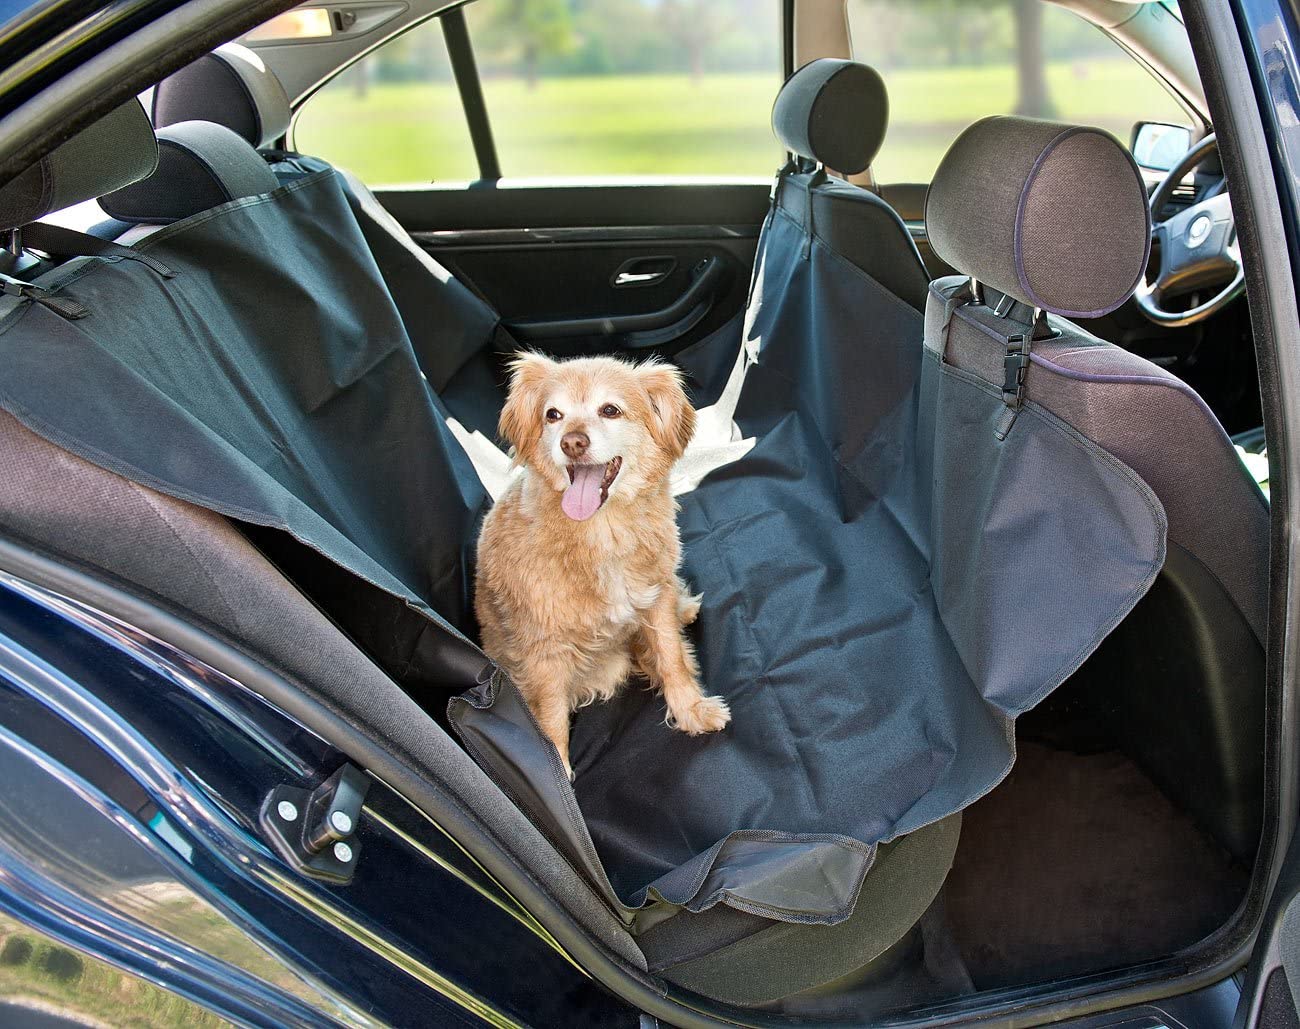  Sweetypet techo coche para perros: Auto de colchón – Manta para perros, para trasera Banco & Maletero, 145 x 145 cm (Asiento Trasero techo para el perro) 